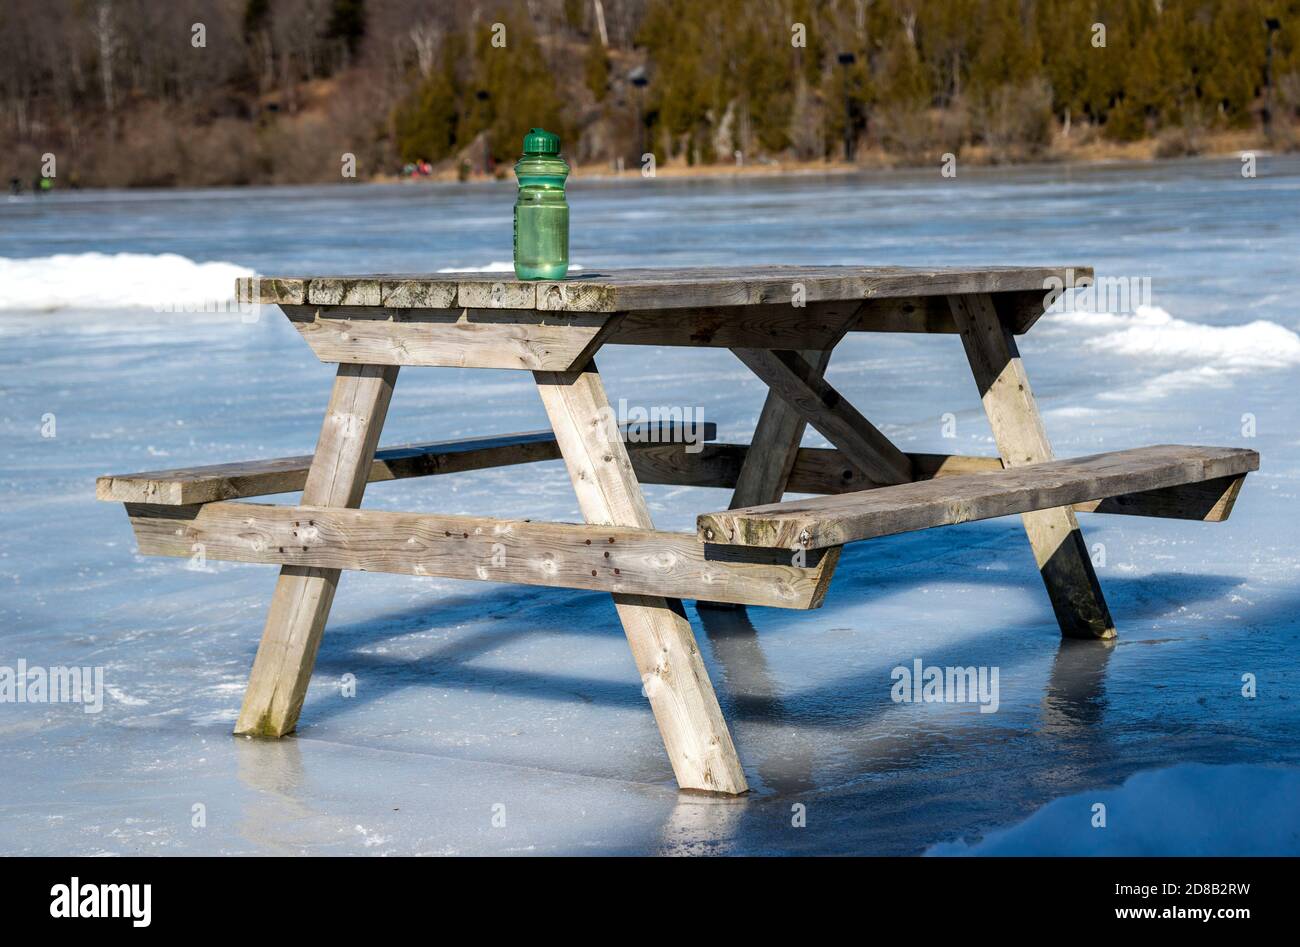 Ein hölzerner Picknicktisch auf einem gefrorenen See. Eine grüne Wasserflasche sitzt auf dem Tisch. Sonniger Tag. Hinweis Horizont ist nicht schief, dies ist die Form von Th Stockfoto